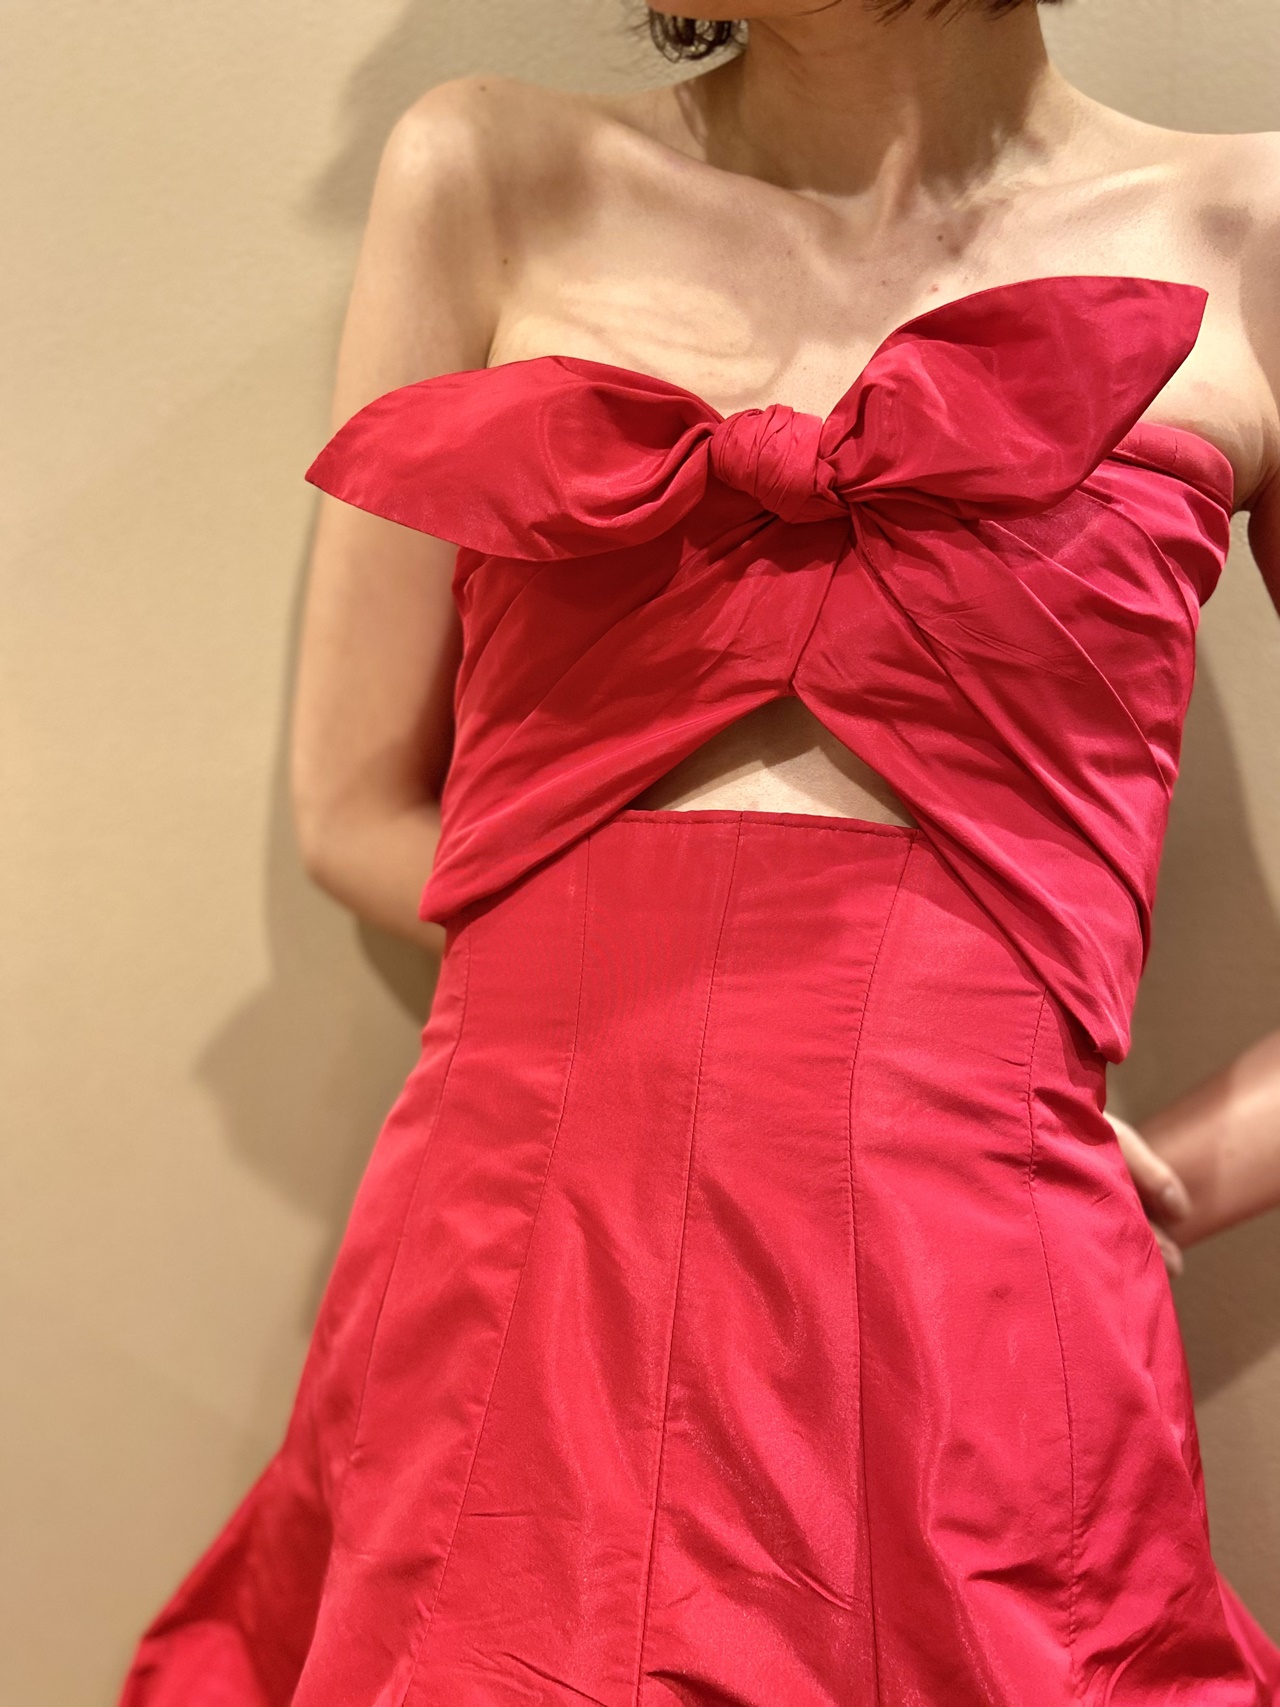 おしゃれなリボンモチーフと肌見せがヘルシーな春夏のパーティーにおすすめの赤のカラードレス